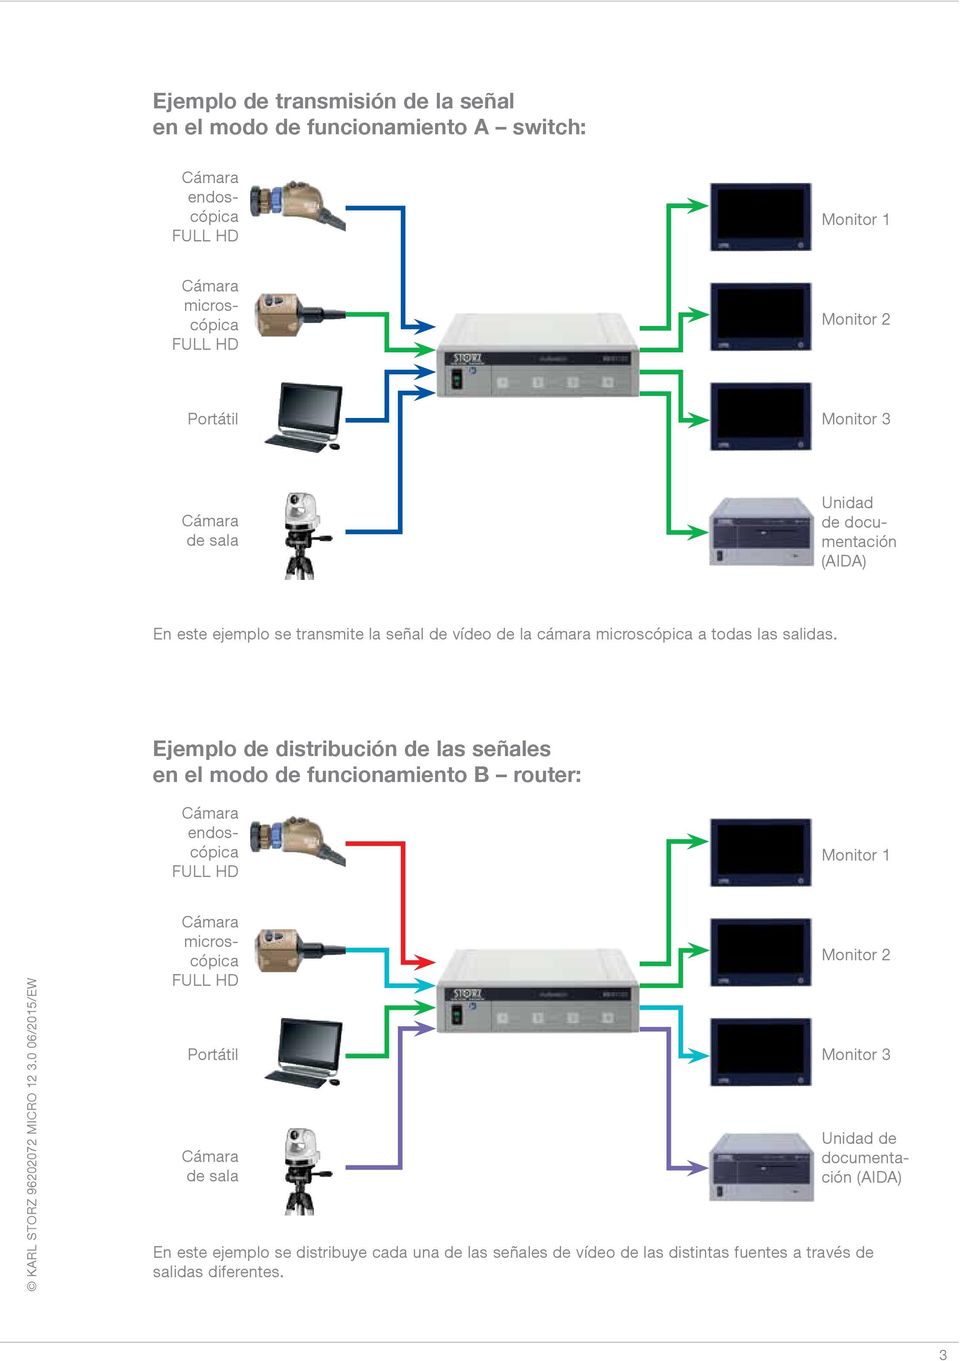 Ejemplo de distribución de las señales en el modo de funcionamiento B router: endoscópica FULL HD Monitor 1 microscópica FULL HD Portátil de sala